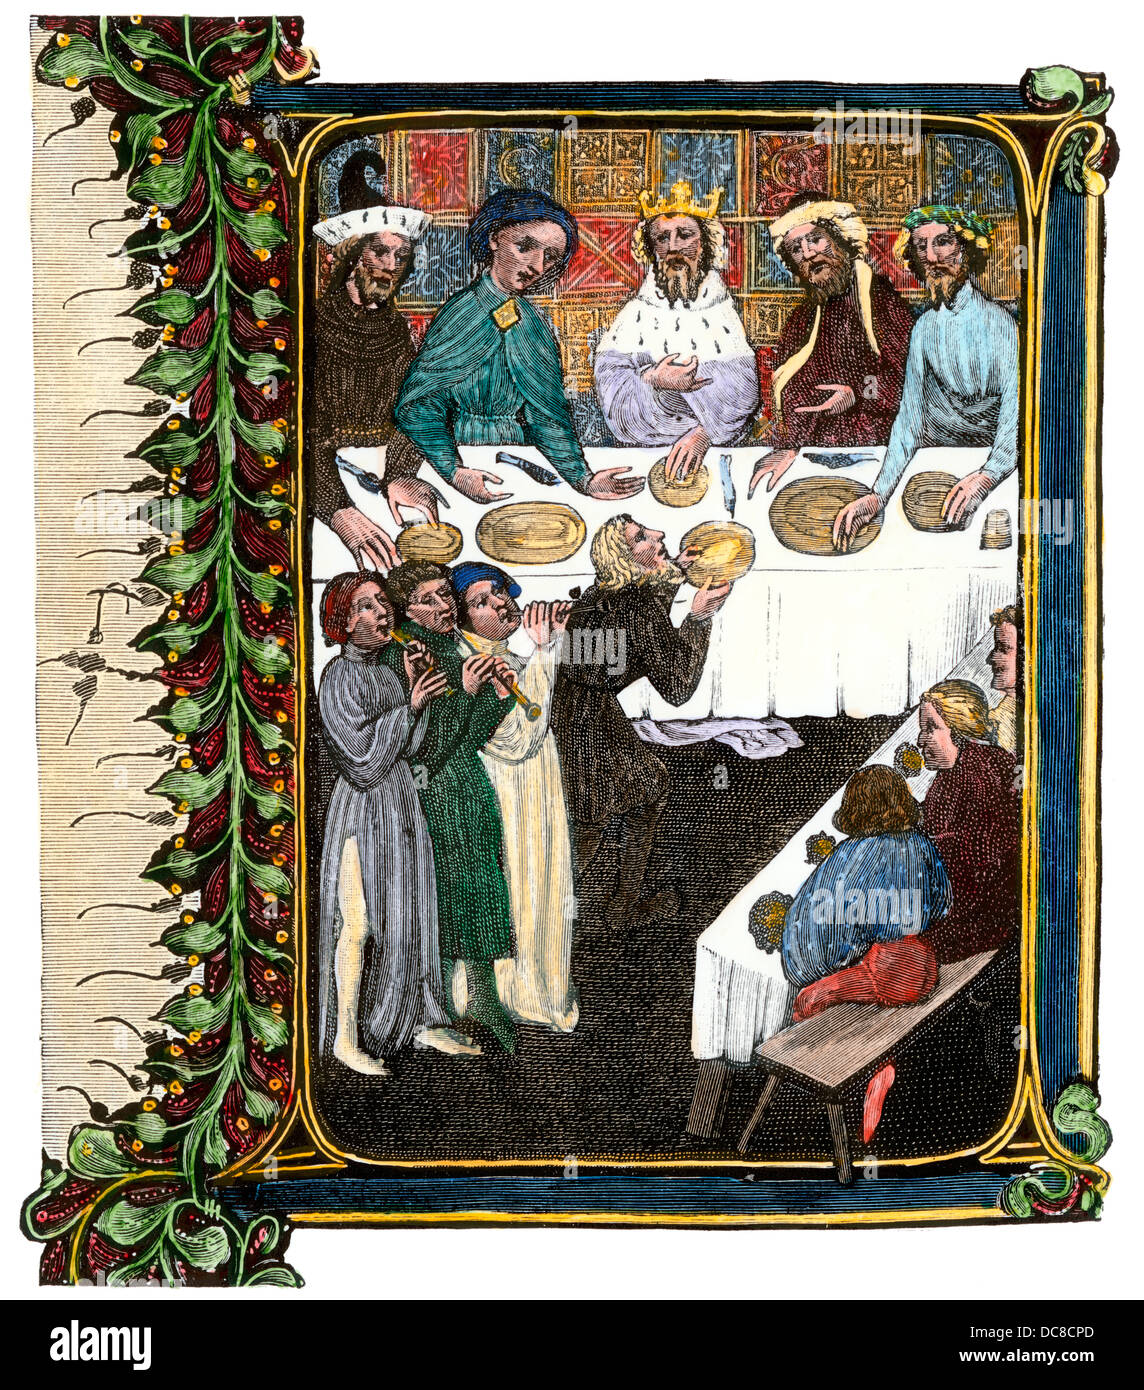 Königliches Bankett im frühen 15. Jahrhundert, von einem beleuchteten Manuskript. Hand - farbige Holzschnitt Reproduktion Stockfoto